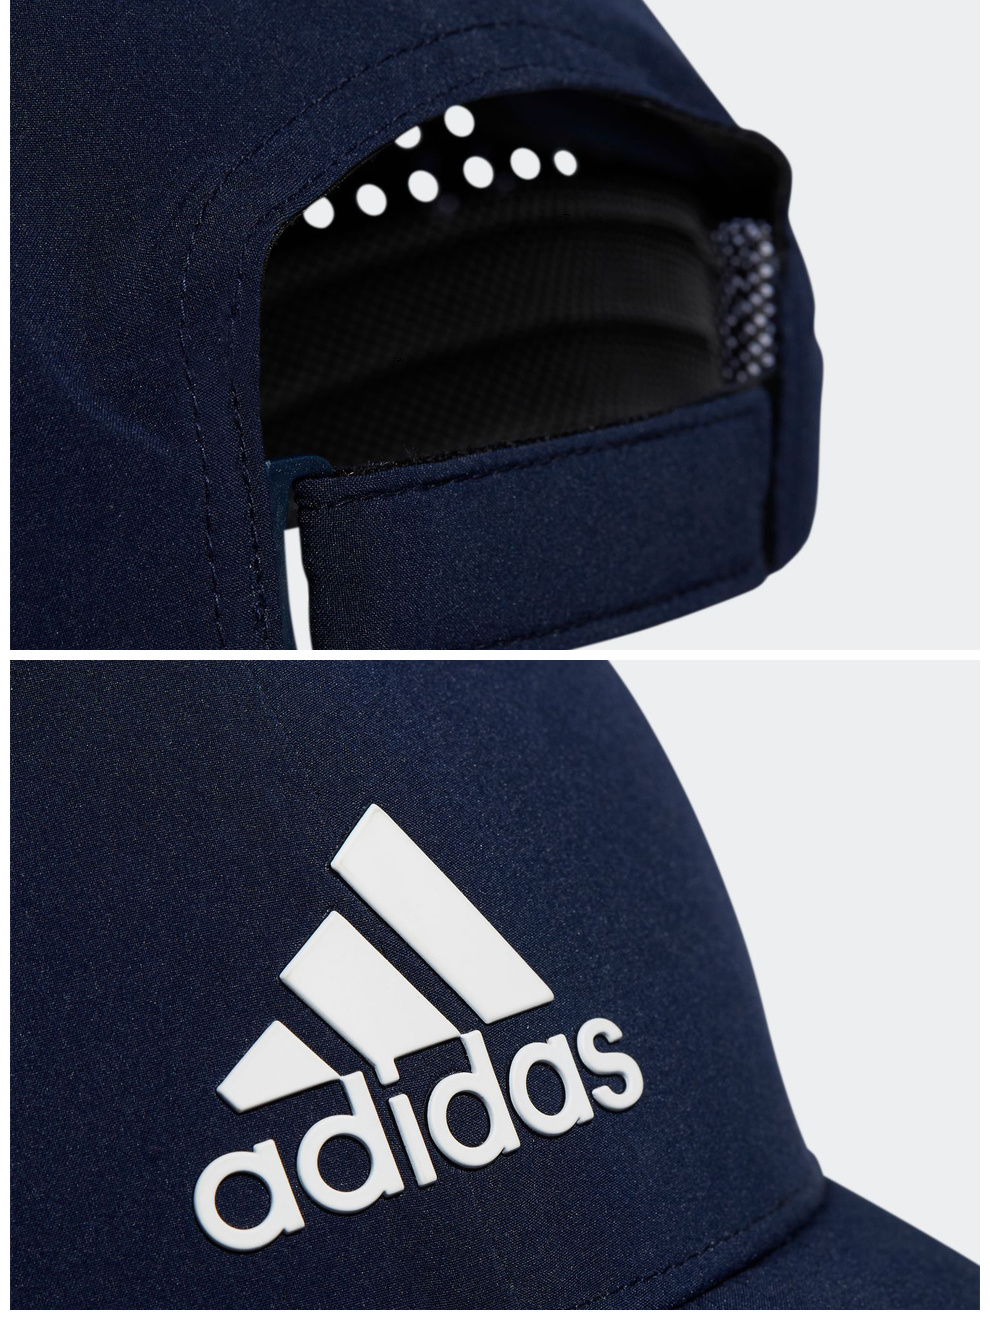 【新品】Adidas阿迪达斯高尔夫球帽男士golf帽子可调节遮阳防晒帽